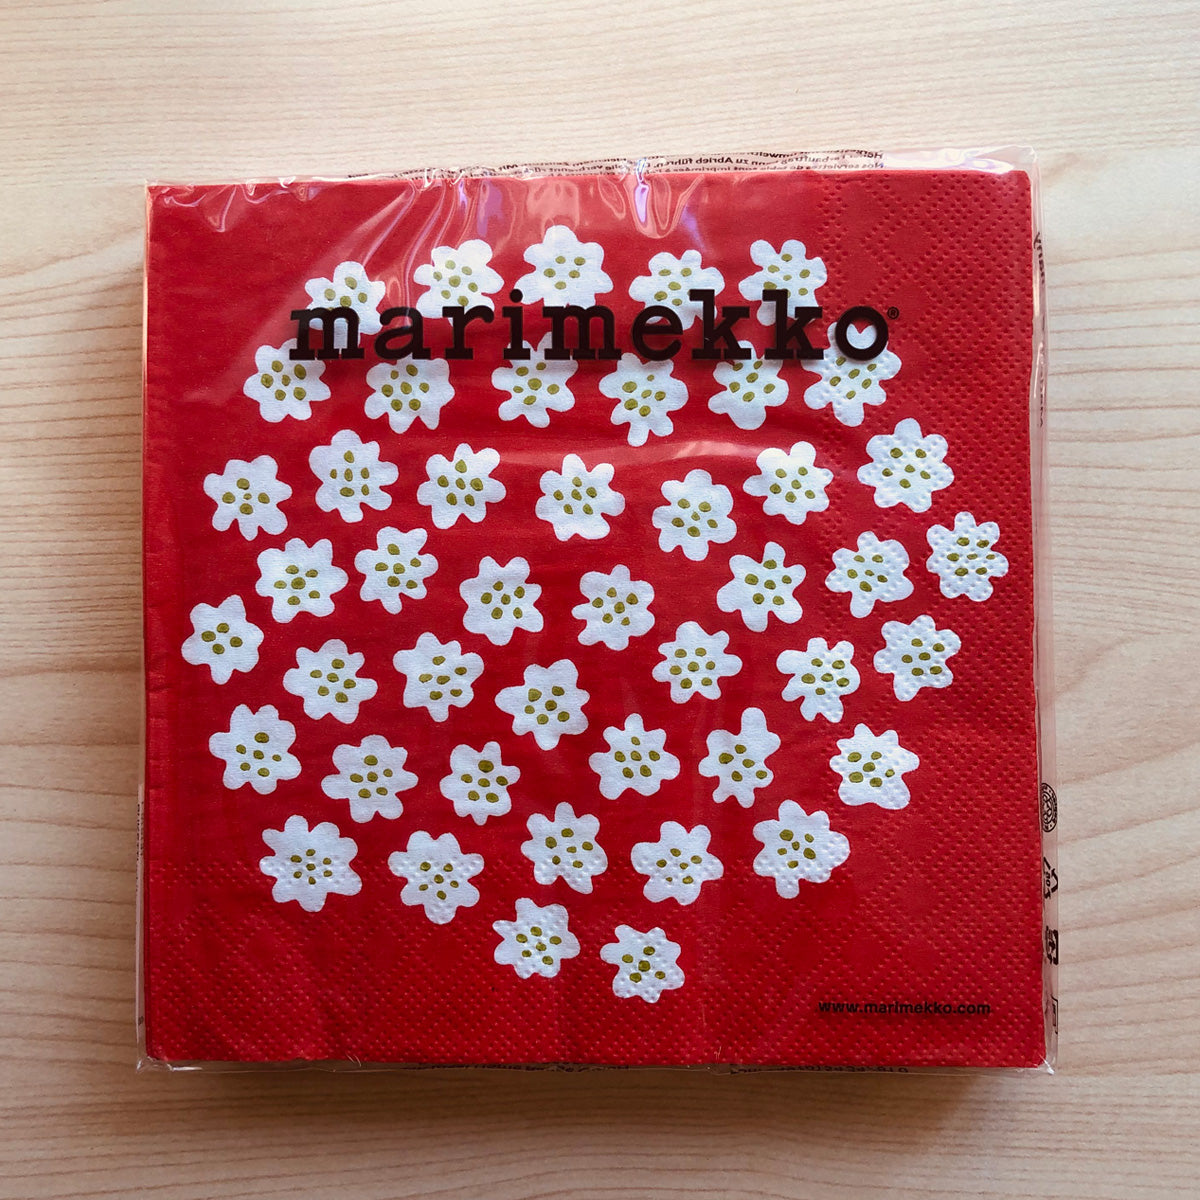 マリメッコ marimekko ペーパーナプキン 紙ナプキン ランチサイズ 20枚